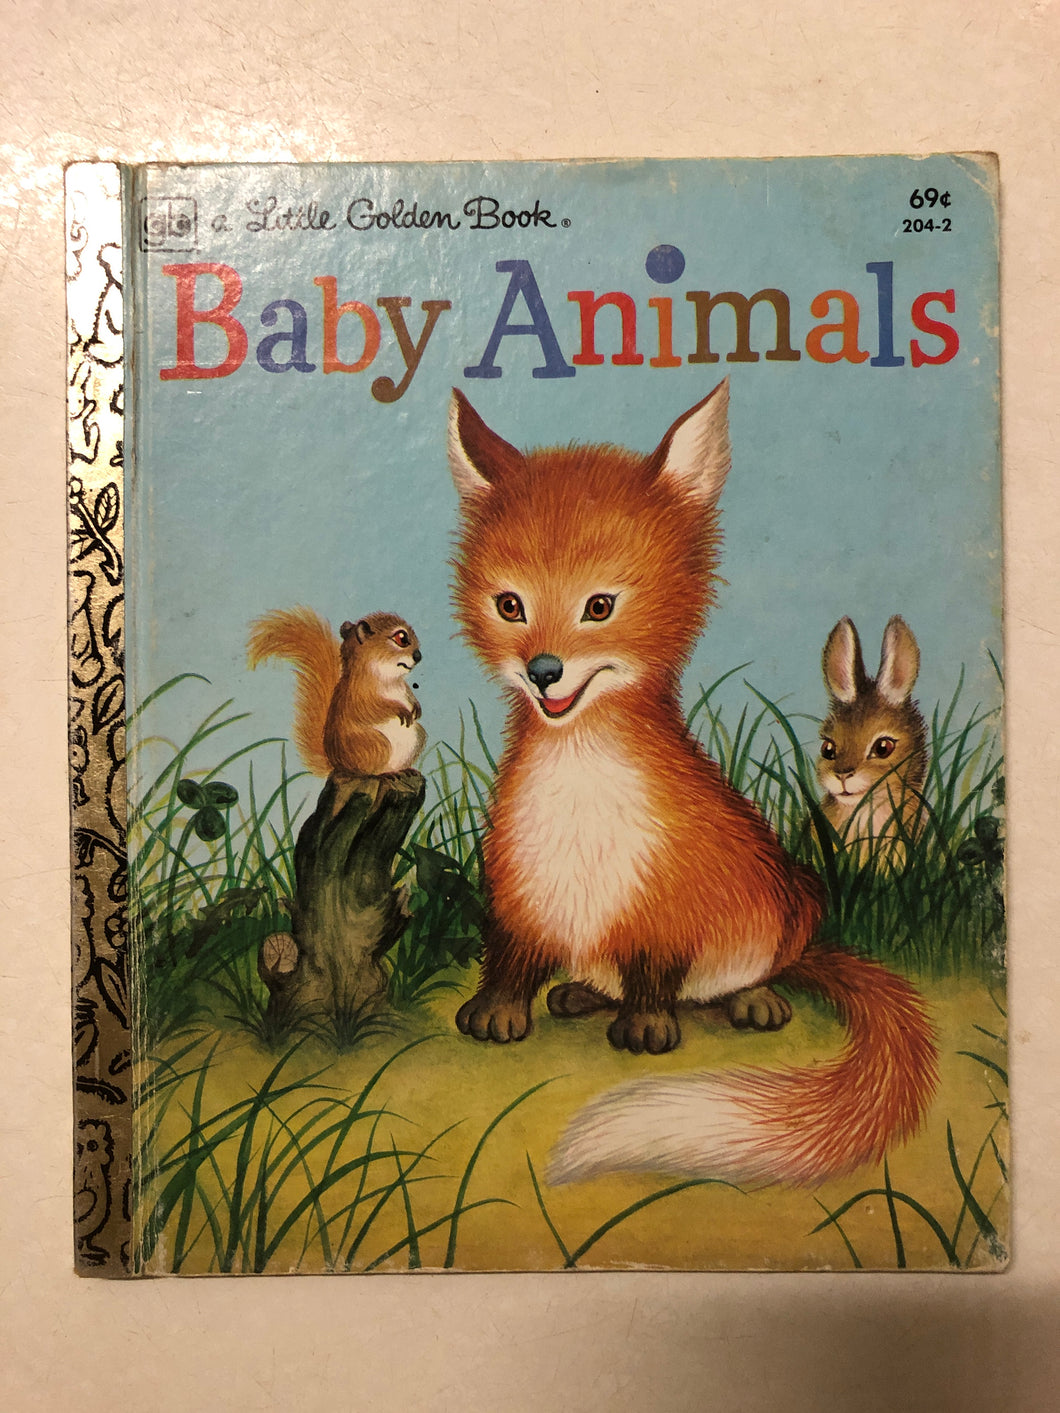 Baby Animals - Slick Cat Books 